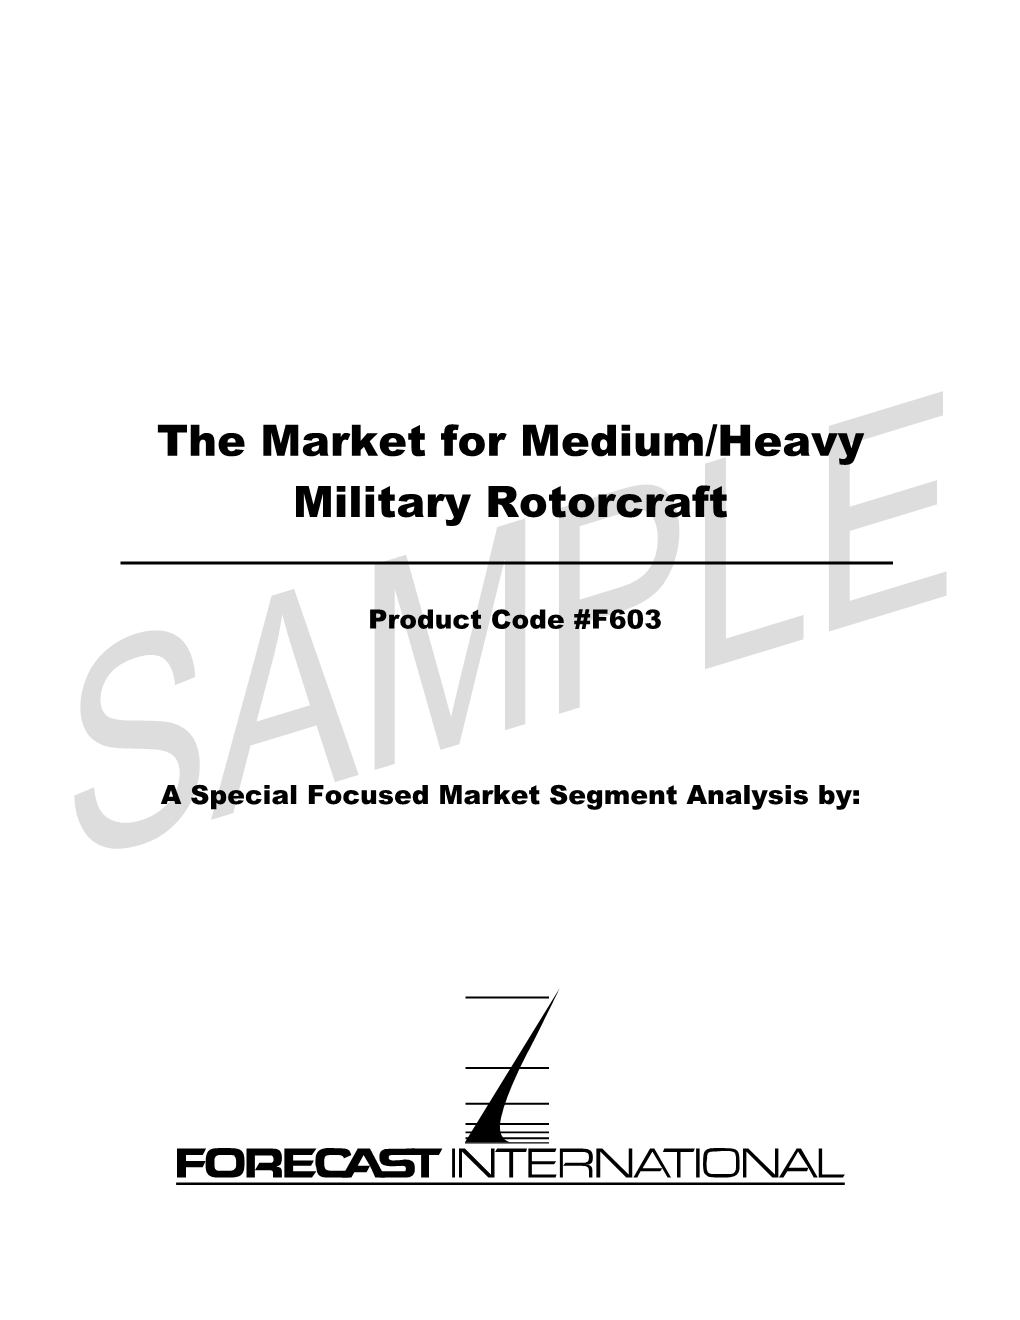 The Market for Medium/Heavy Military Rotorcraft